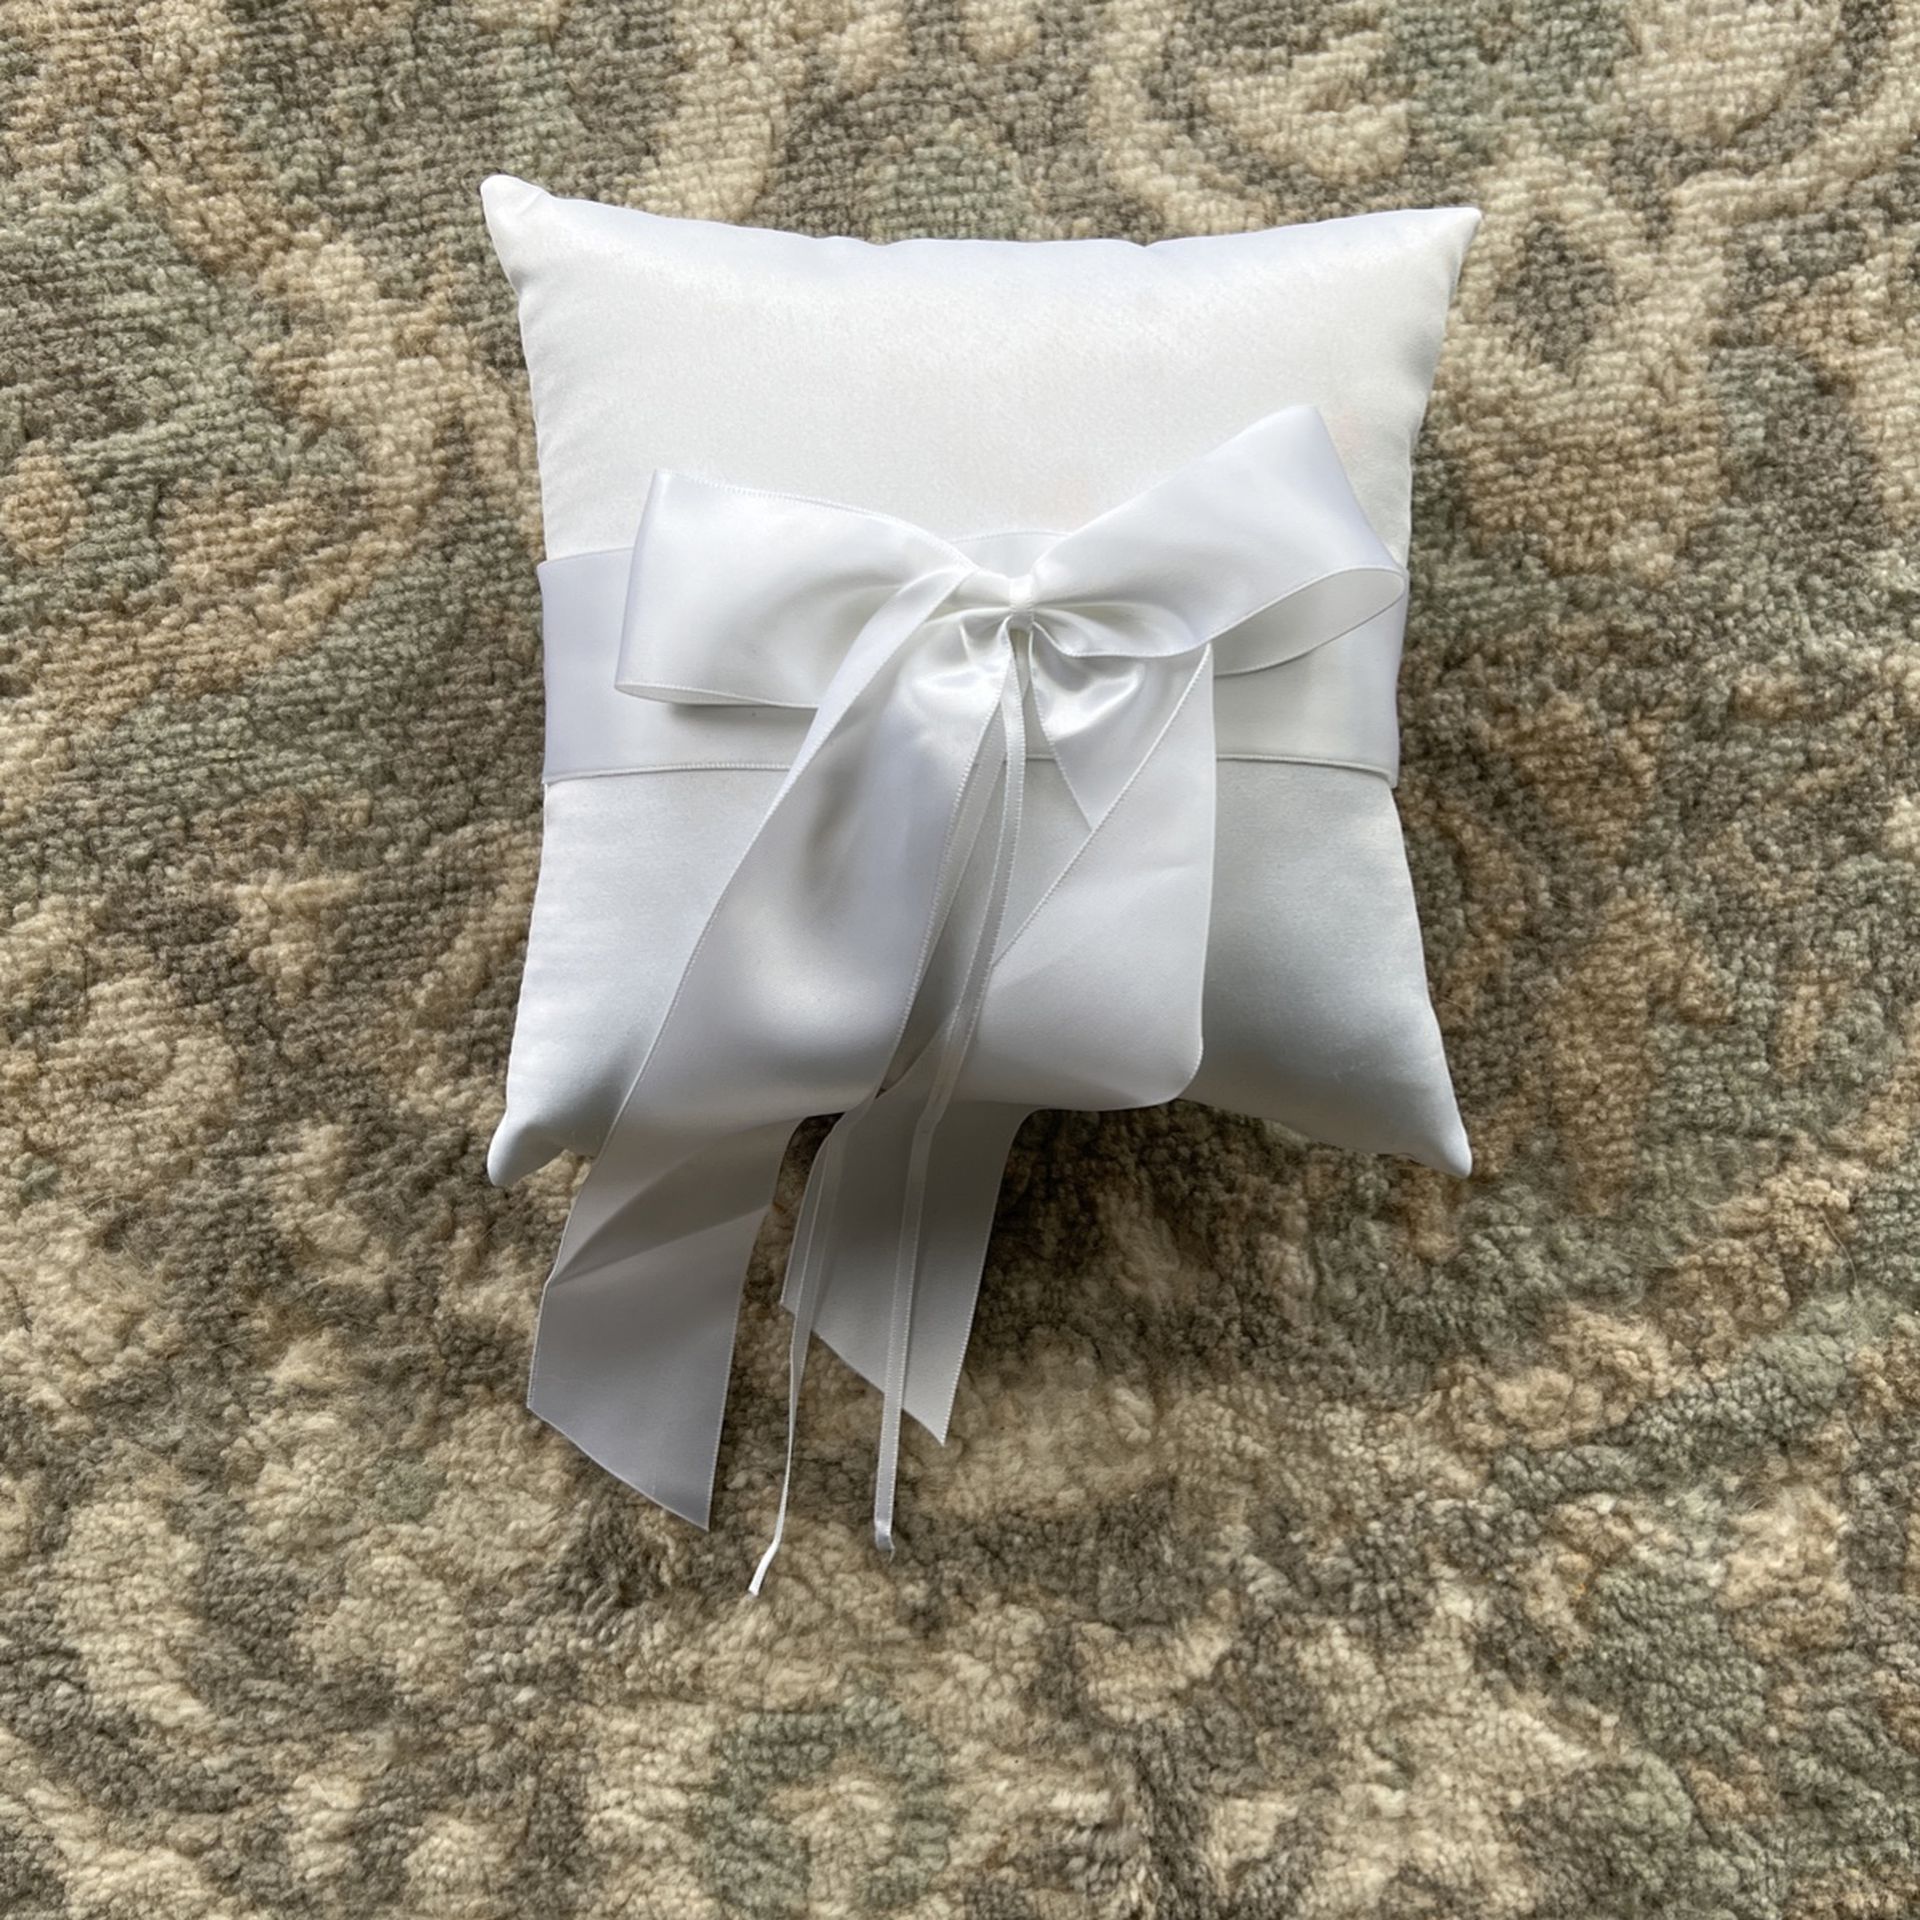 Wedding ring pillow